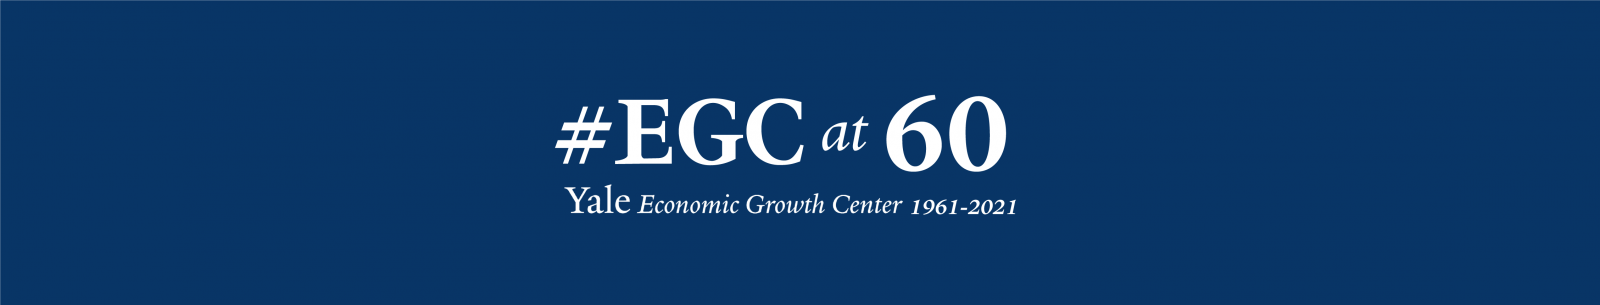 EGC at 60 logo